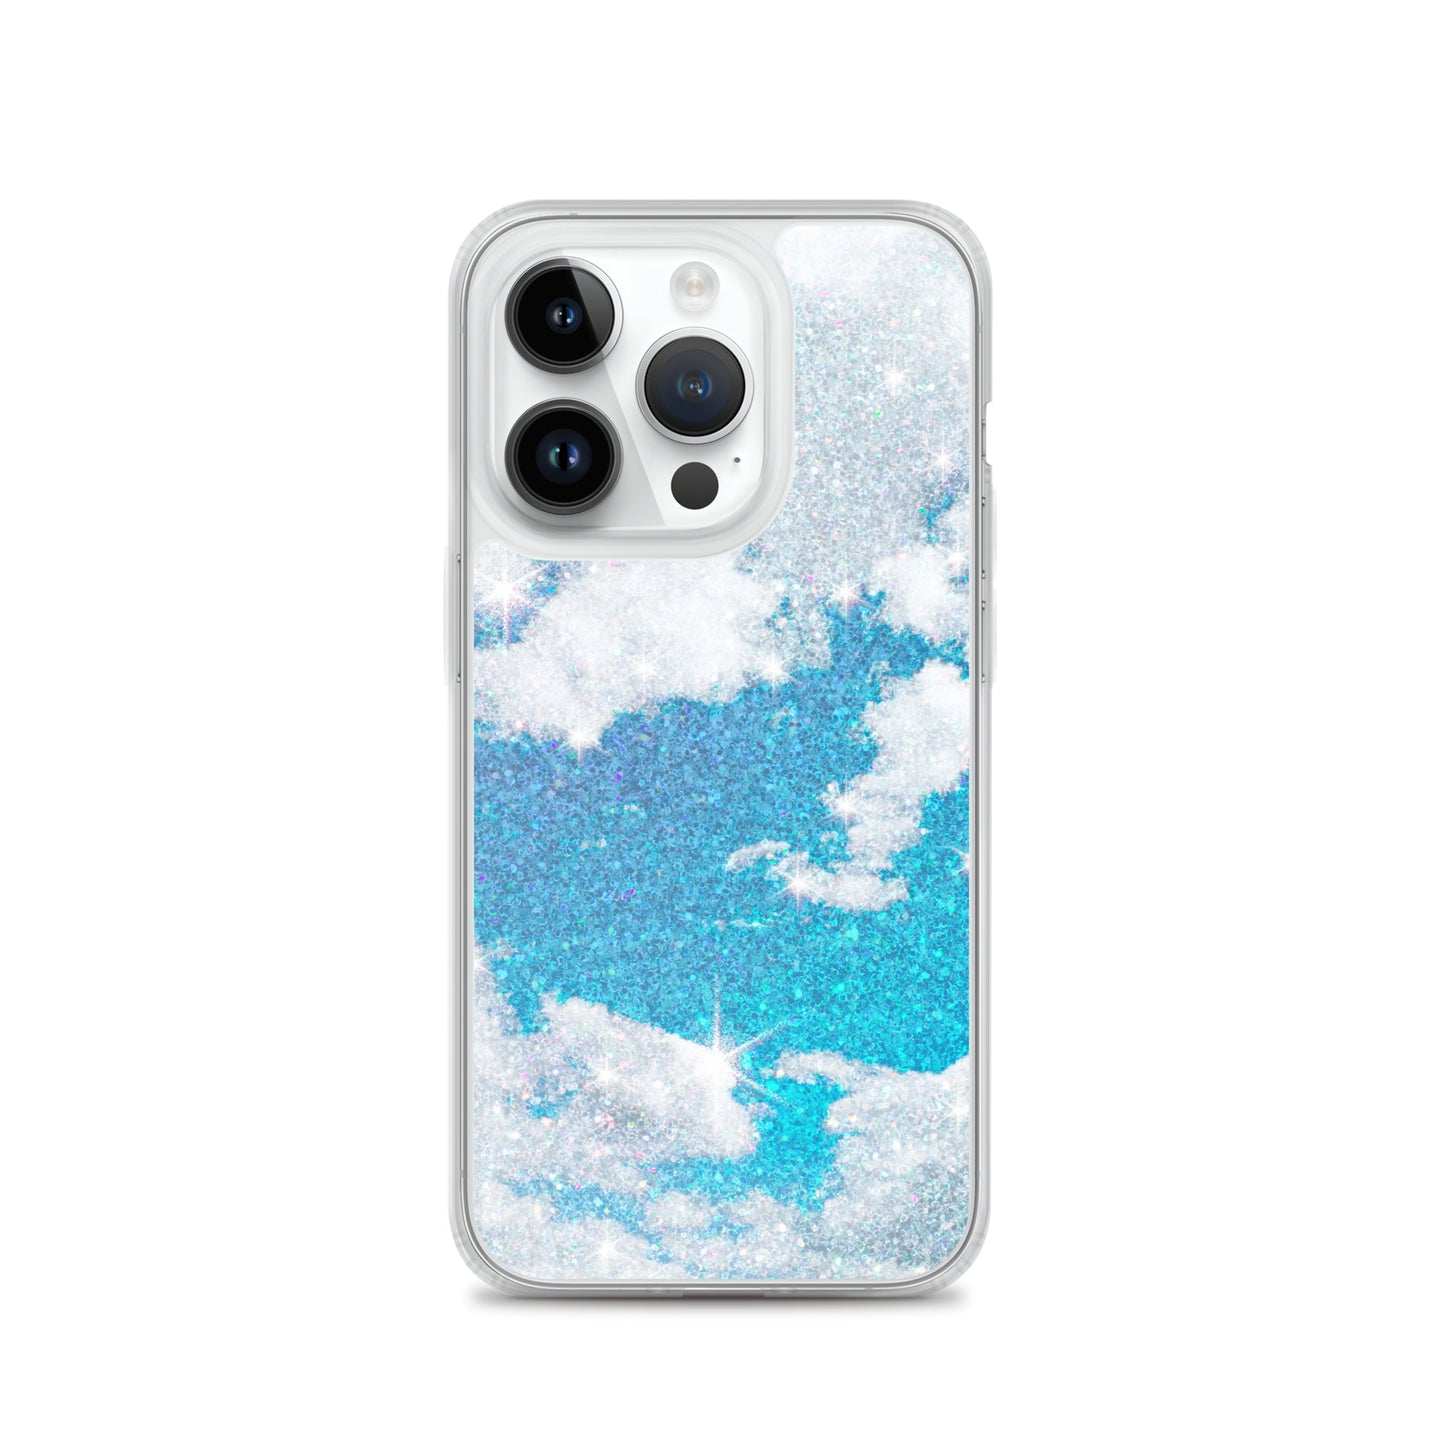 Funda transparente azul iridiscente con nubes brillantes para iPhone®